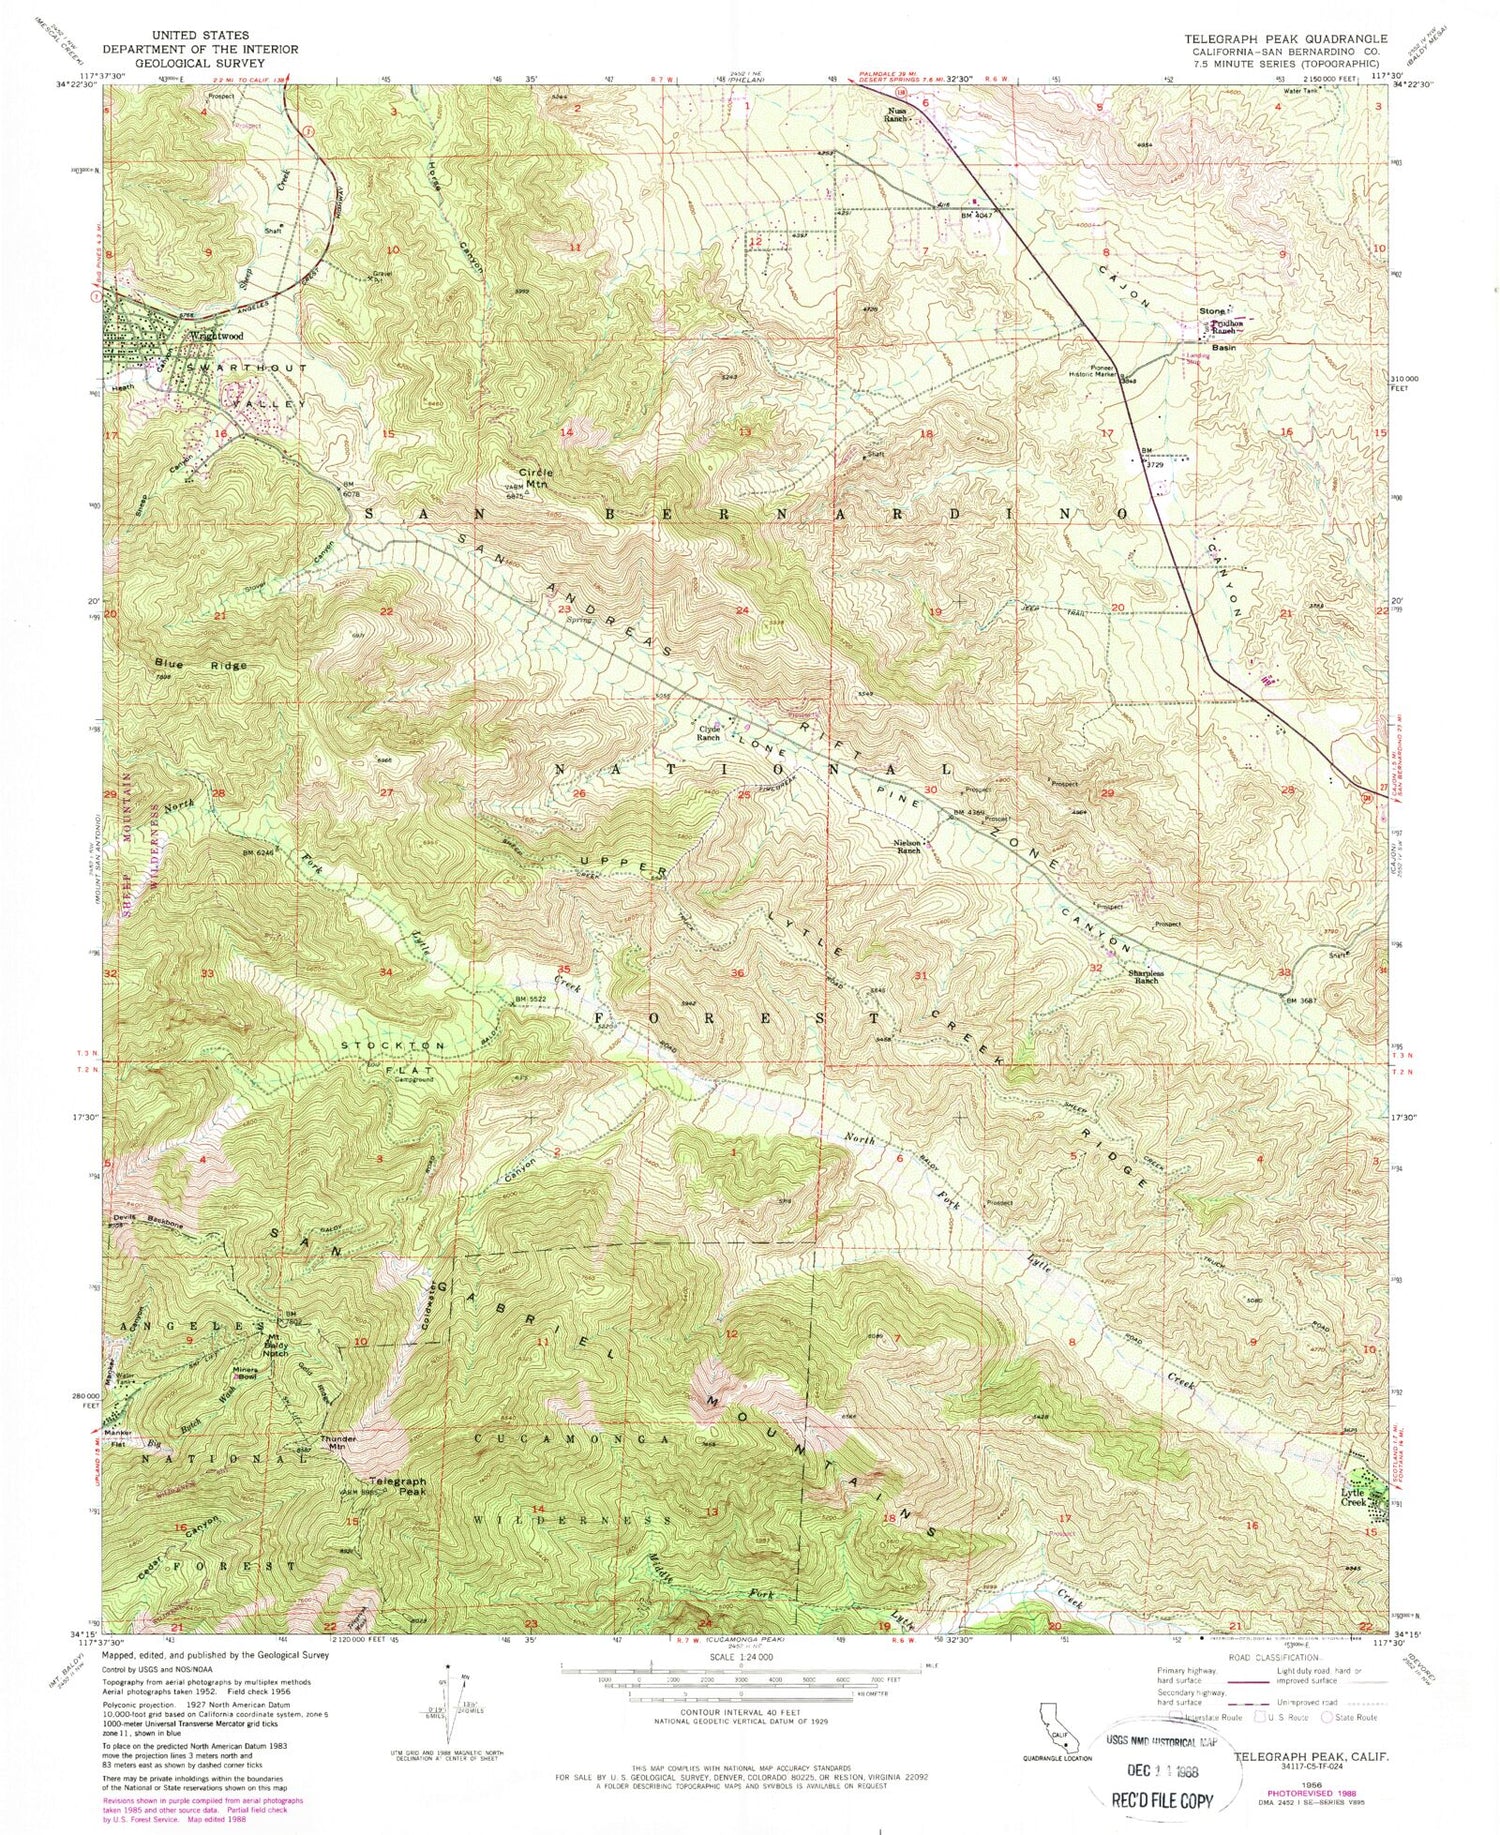 USGS Classic Telegraph Peak California 7.5'x7.5' Topo Map Image